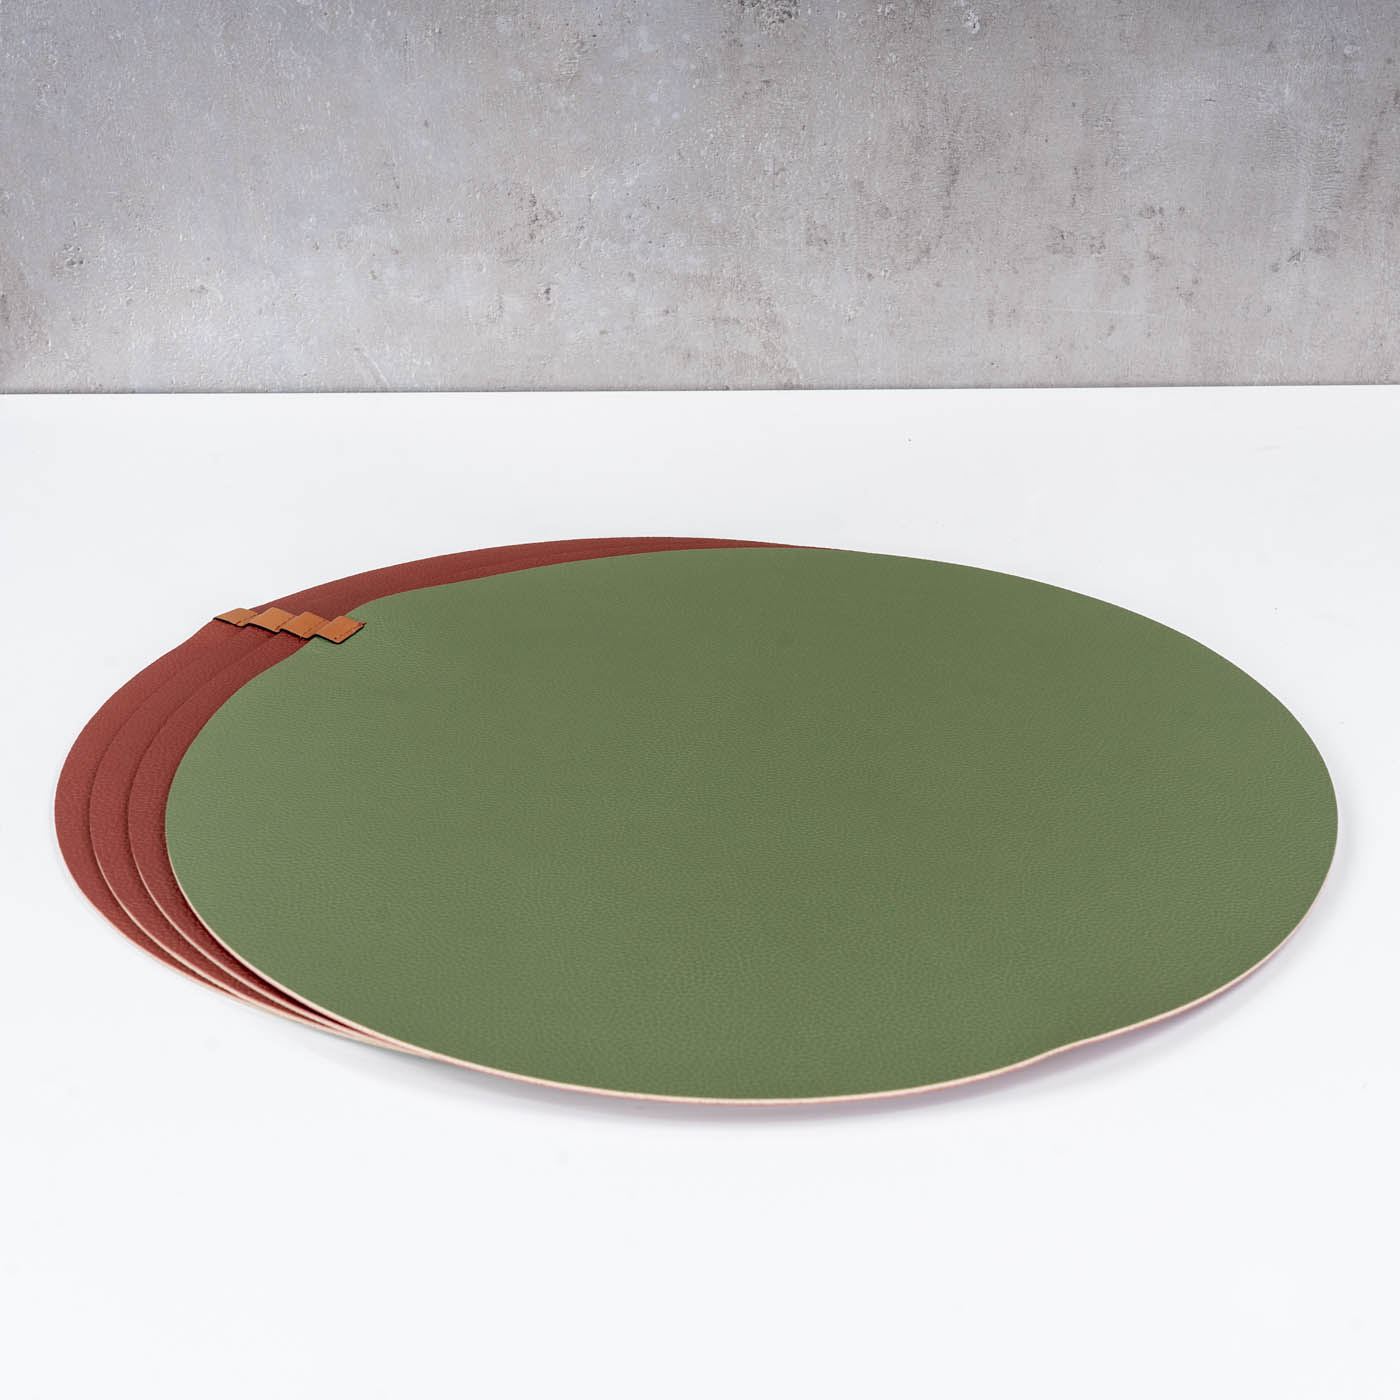 4er Set Platzset Tischsets 38cm Rund Grün Rot Lederoptik Beidseitig Tischdeko